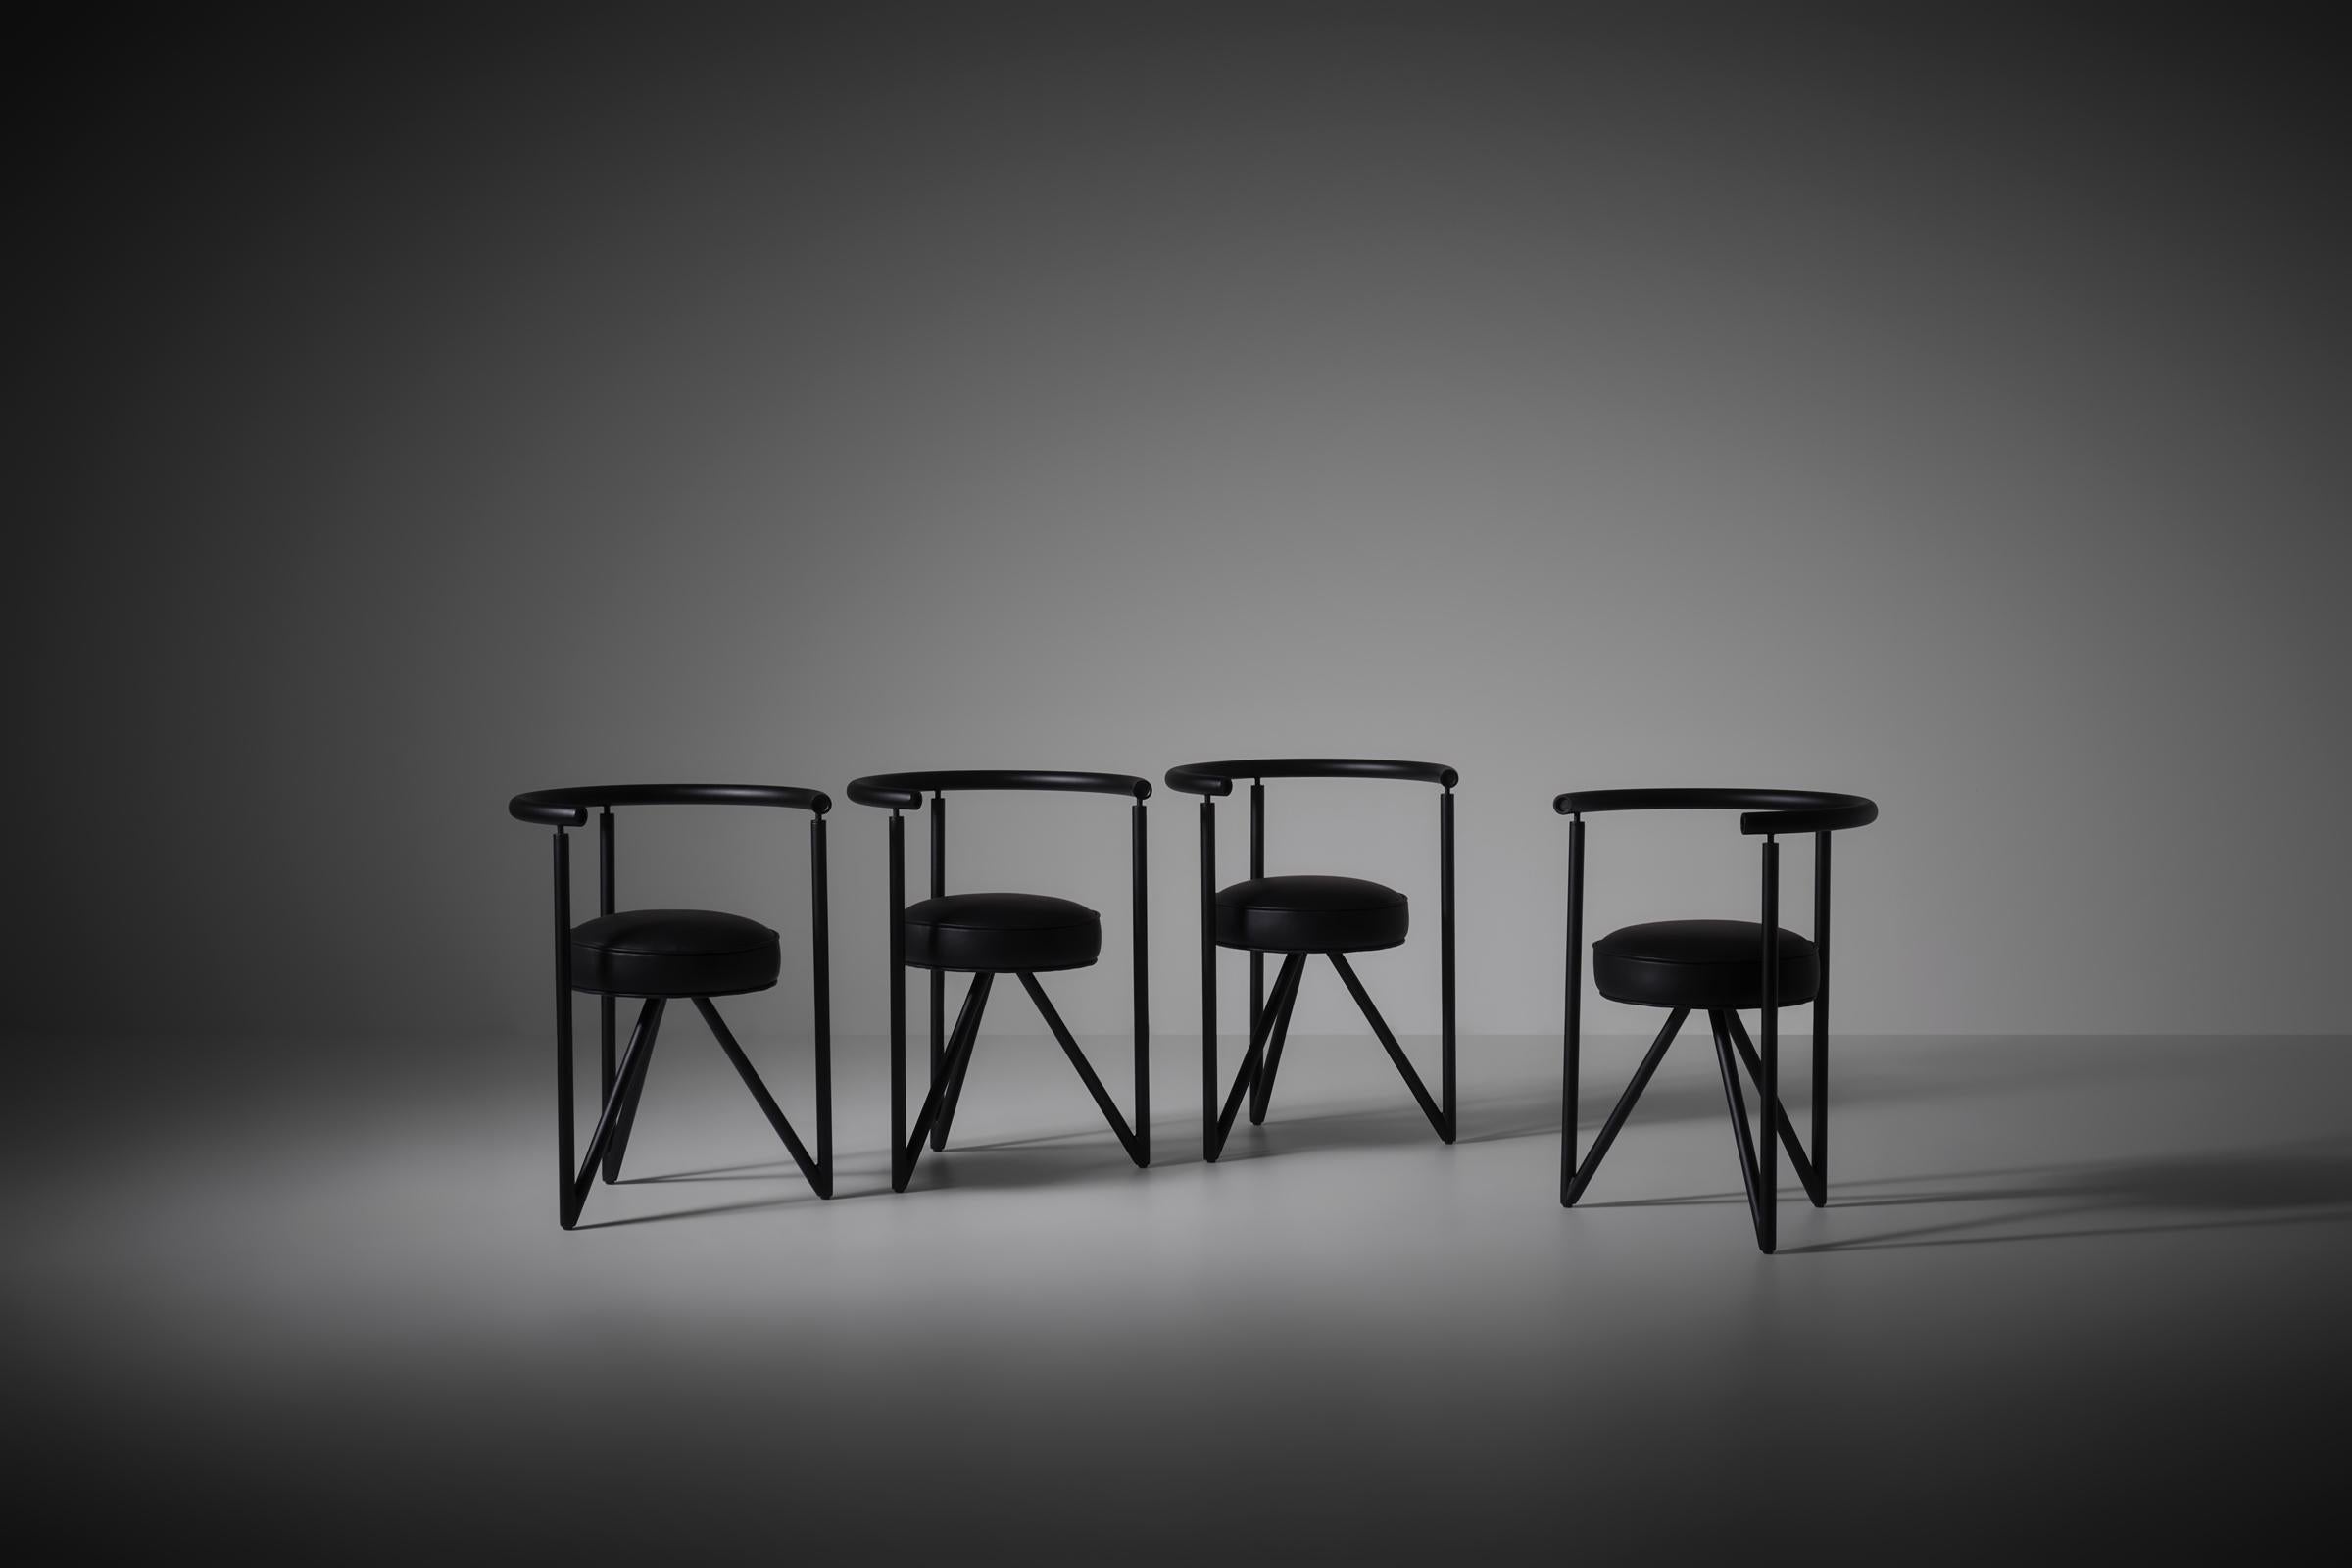 Chaises Miss Dorn par Philippe Starck pour Disform, 1982. Piétements en tube d'acier laqué noir et sièges cylindriques ronds en cuir noir. La combinaison de leurs formes primaires et de leurs lignes dures confère aux chaises une silhouette